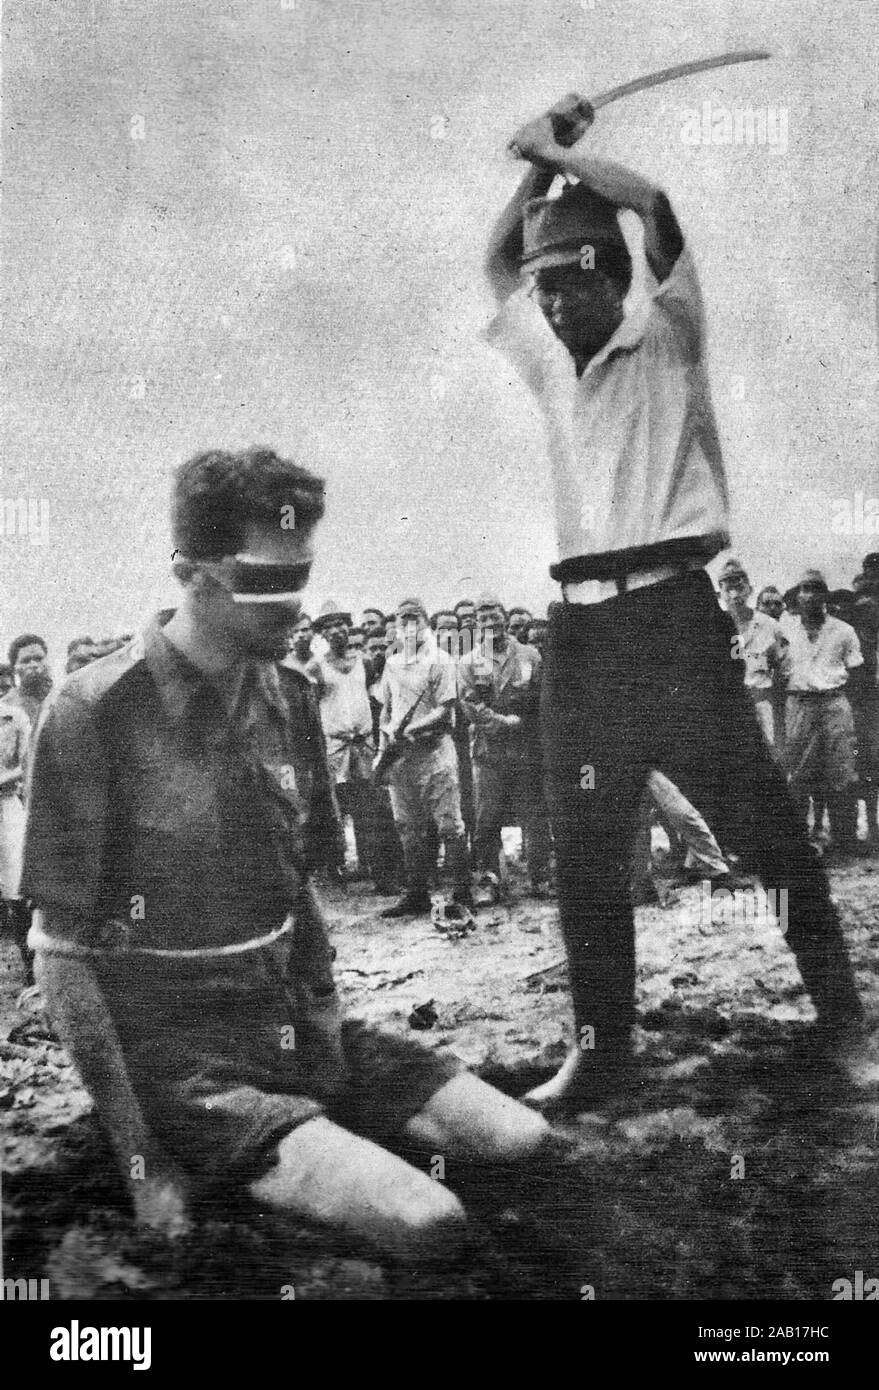 Guinée, Aitape. 24 octobre 1943. Une photographie trouvée sur le cadavre d'un soldat japonais montrant NX143314 Le Sergent (Sgt) G. Leonard Siffleet 'M' de l'unité spéciale, portant un bandeau et avec ses bras attachés, sur le point d'être décapité avec un sabre par Yasuno Chikao. L'exécution a été ordonnée par le Vice-amiral Kamada, le commandant de la force navale japonaise à Aitape. Le Sgt Siffleet a été capturé avec Soldat (Sdt) Pattiwahl Reharin Ambonese et Pte, membres de la Forces Indonésiennes, tandis qu'engagé dans la reconnaissance derrière les lignes japonaises. Yasuno Chikao est décédé avant la fin de la guerre Banque D'Images